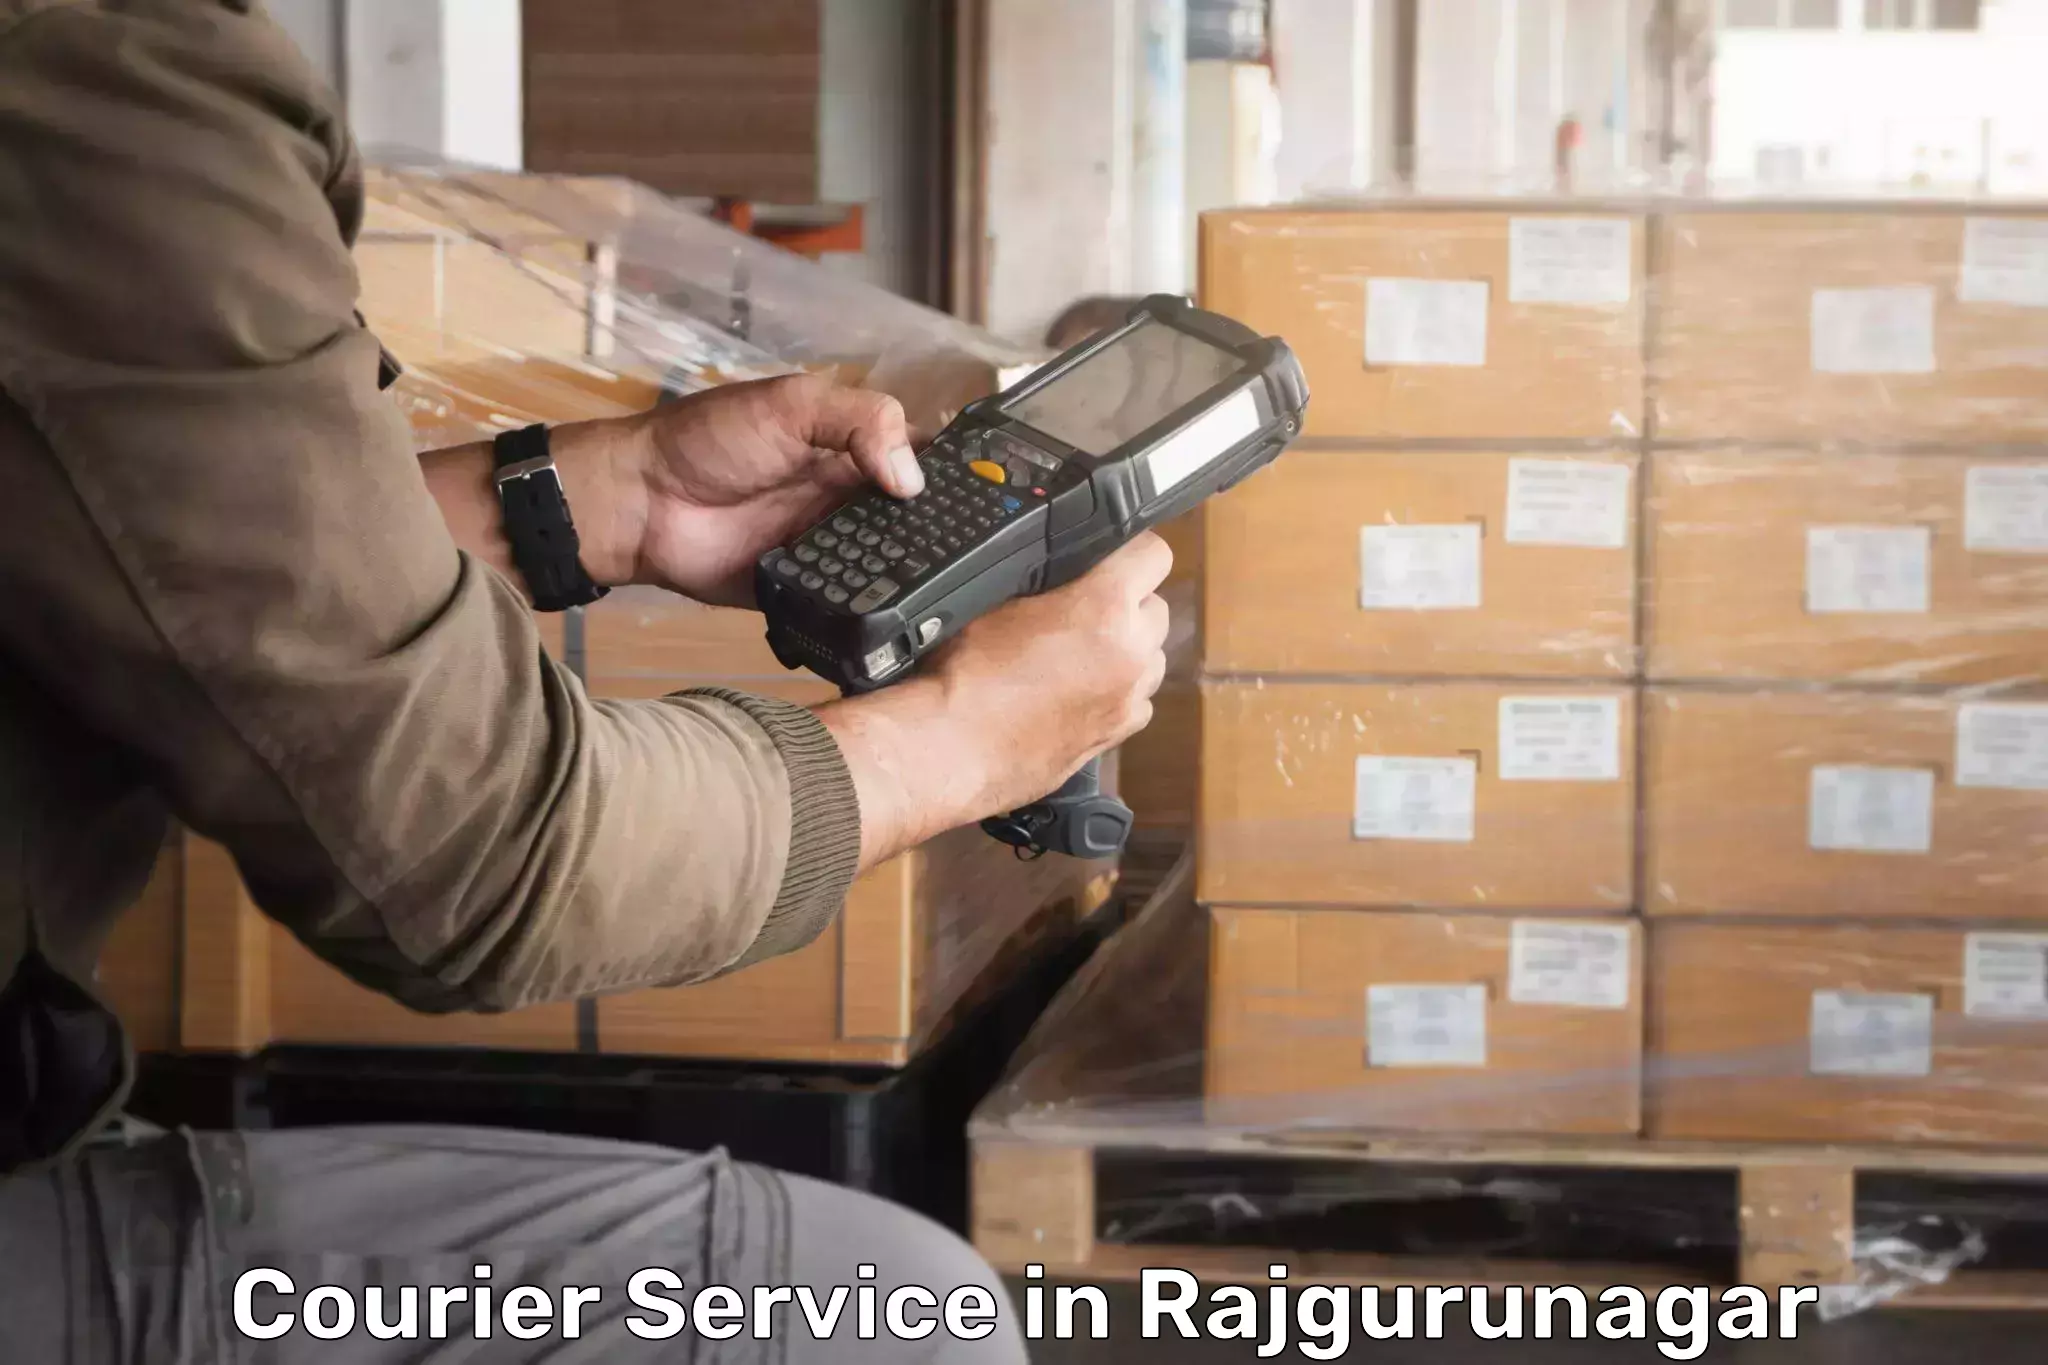 Innovative shipping solutions in Rajgurunagar